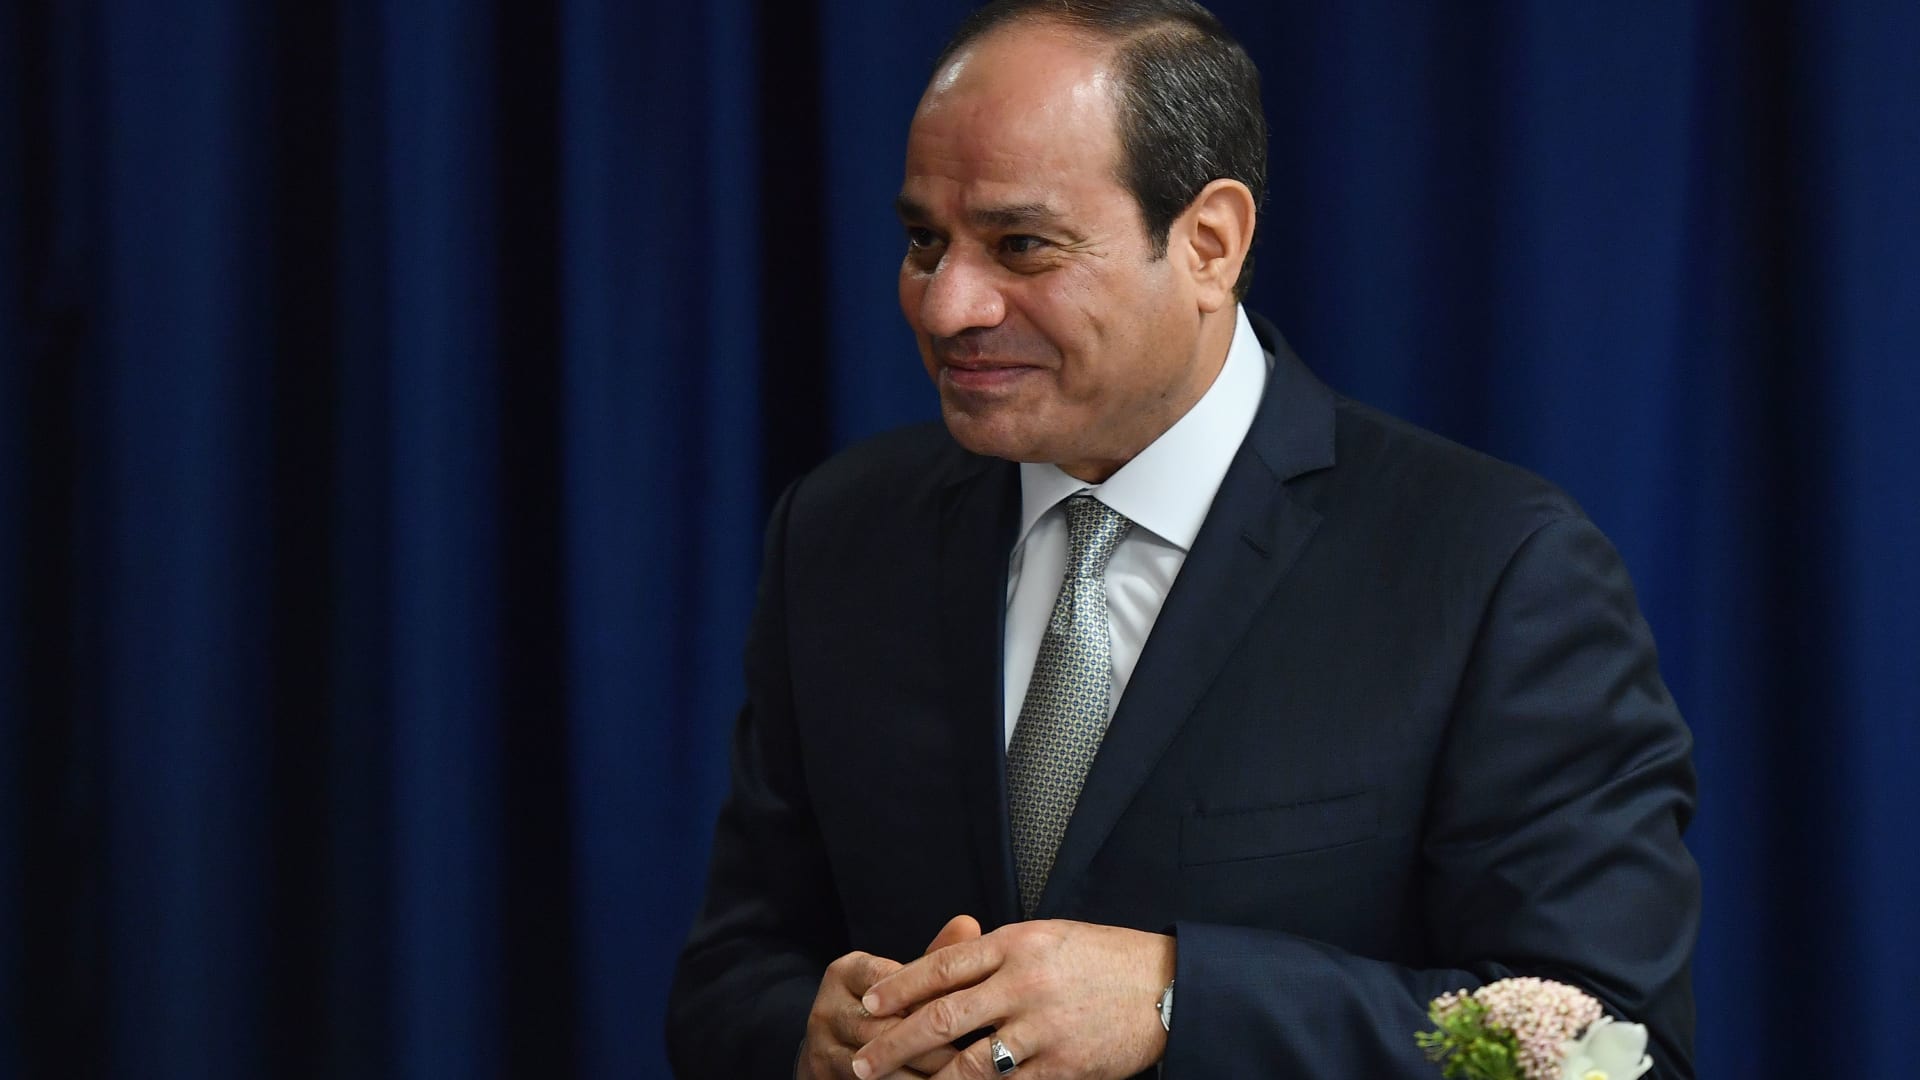 مشاهد من حفل تنصيب الرئيس المصري المنتخب عبدالفتاح السيسي